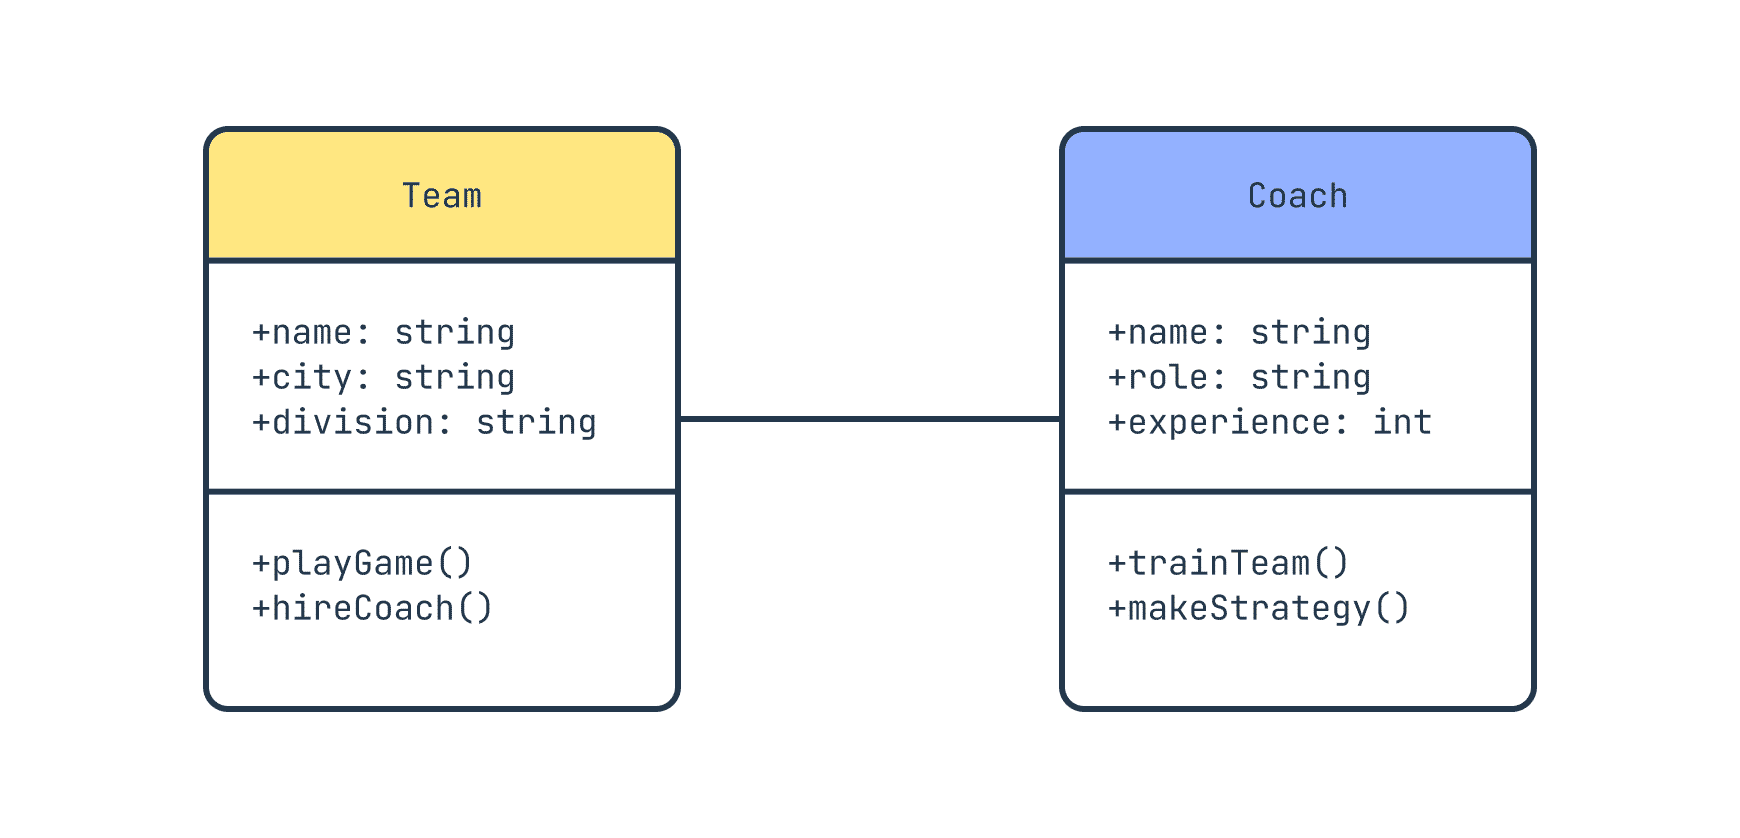 An association relationship in a UML class diagram